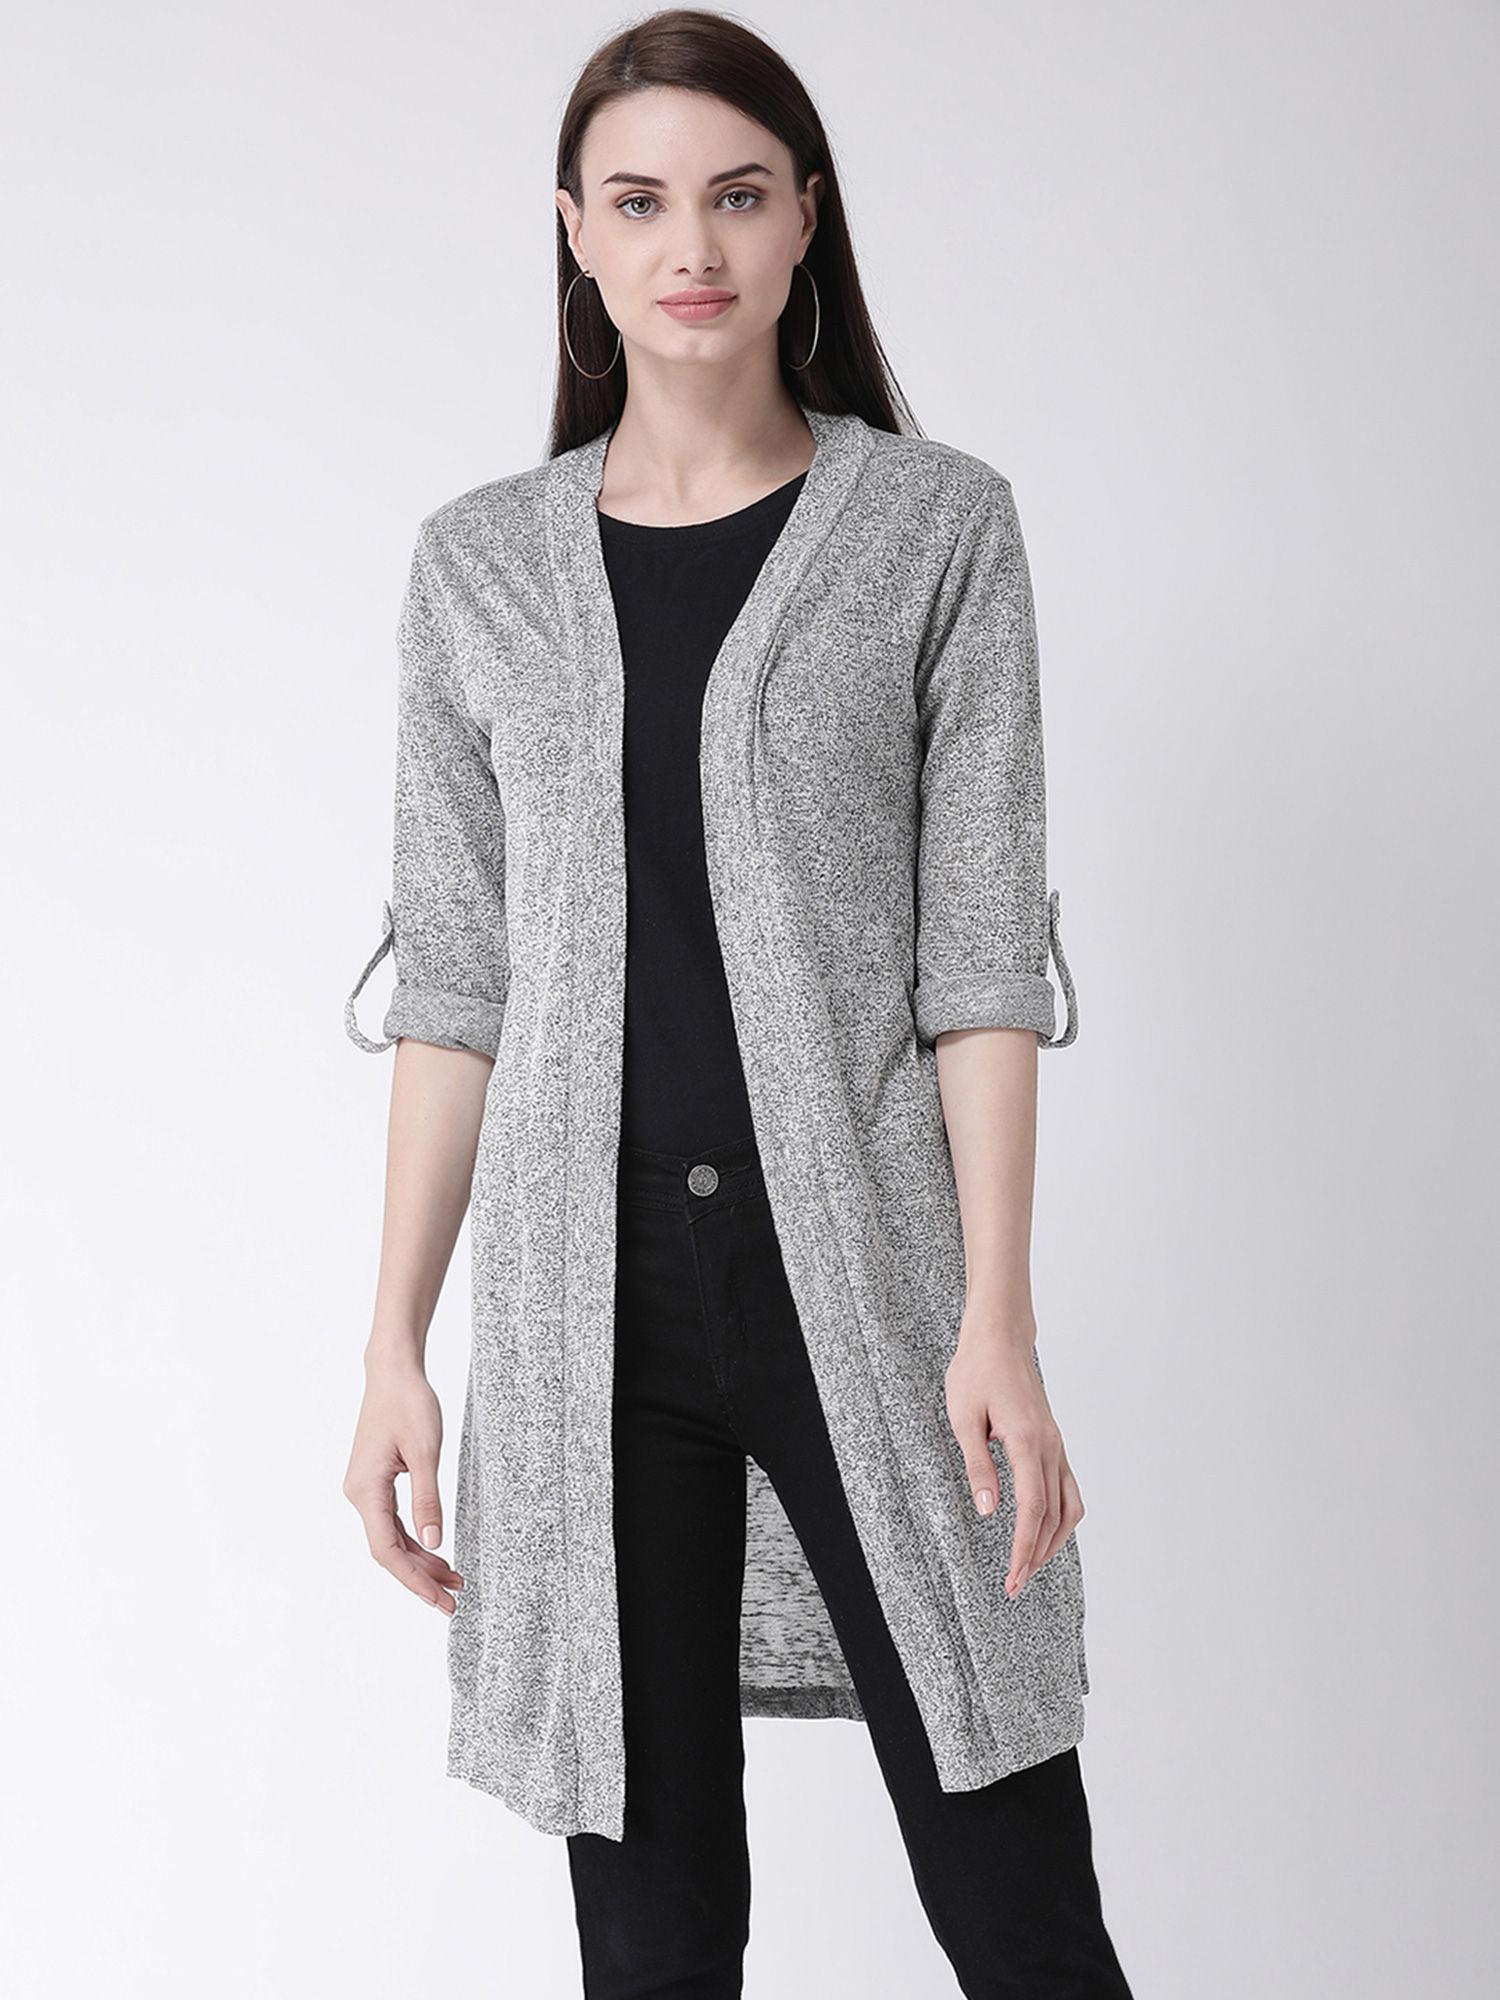 grey-jacquard-knit-yarn-dyed-full-sleeve-stitching-shrug